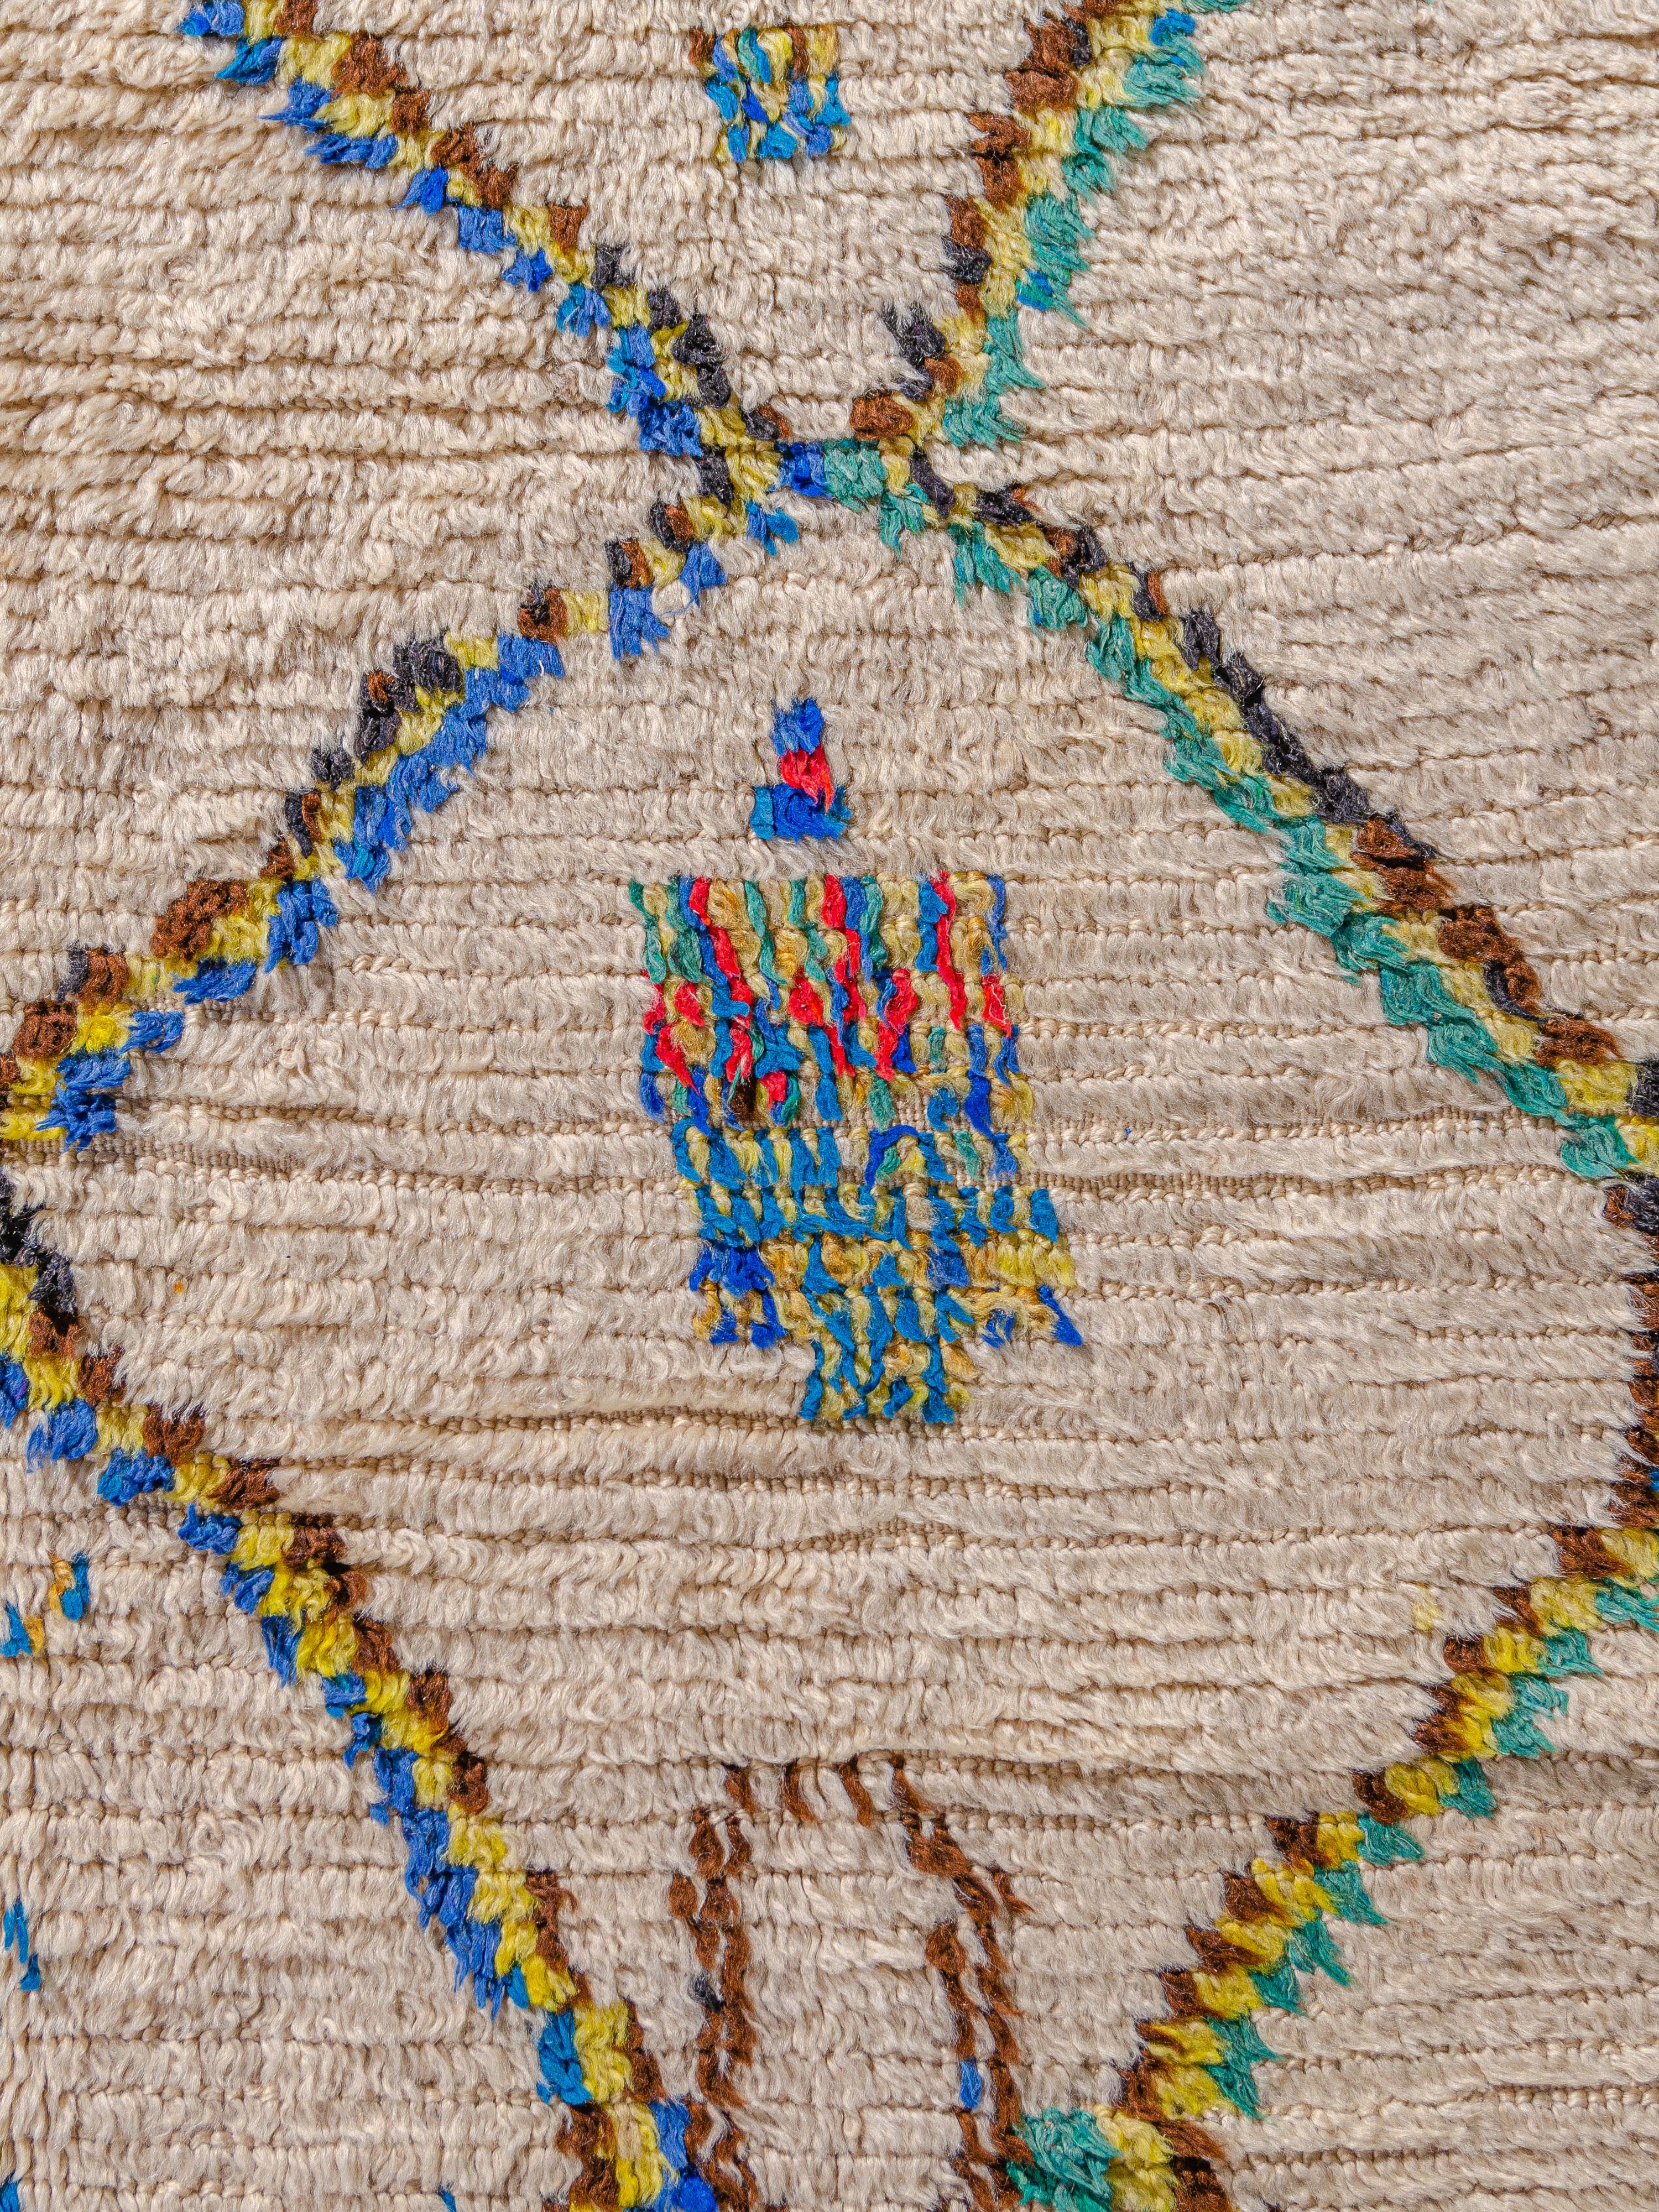 Un exceptionnel azilal marocain vintage avec un réseau de losanges distinct combiné à des motifs abstraits flottants dans tout le champ. Noué dans une palette vivante de turquoise, jaune, bleu électrique, rouge et brun naturel sur un fond ivoire. Un